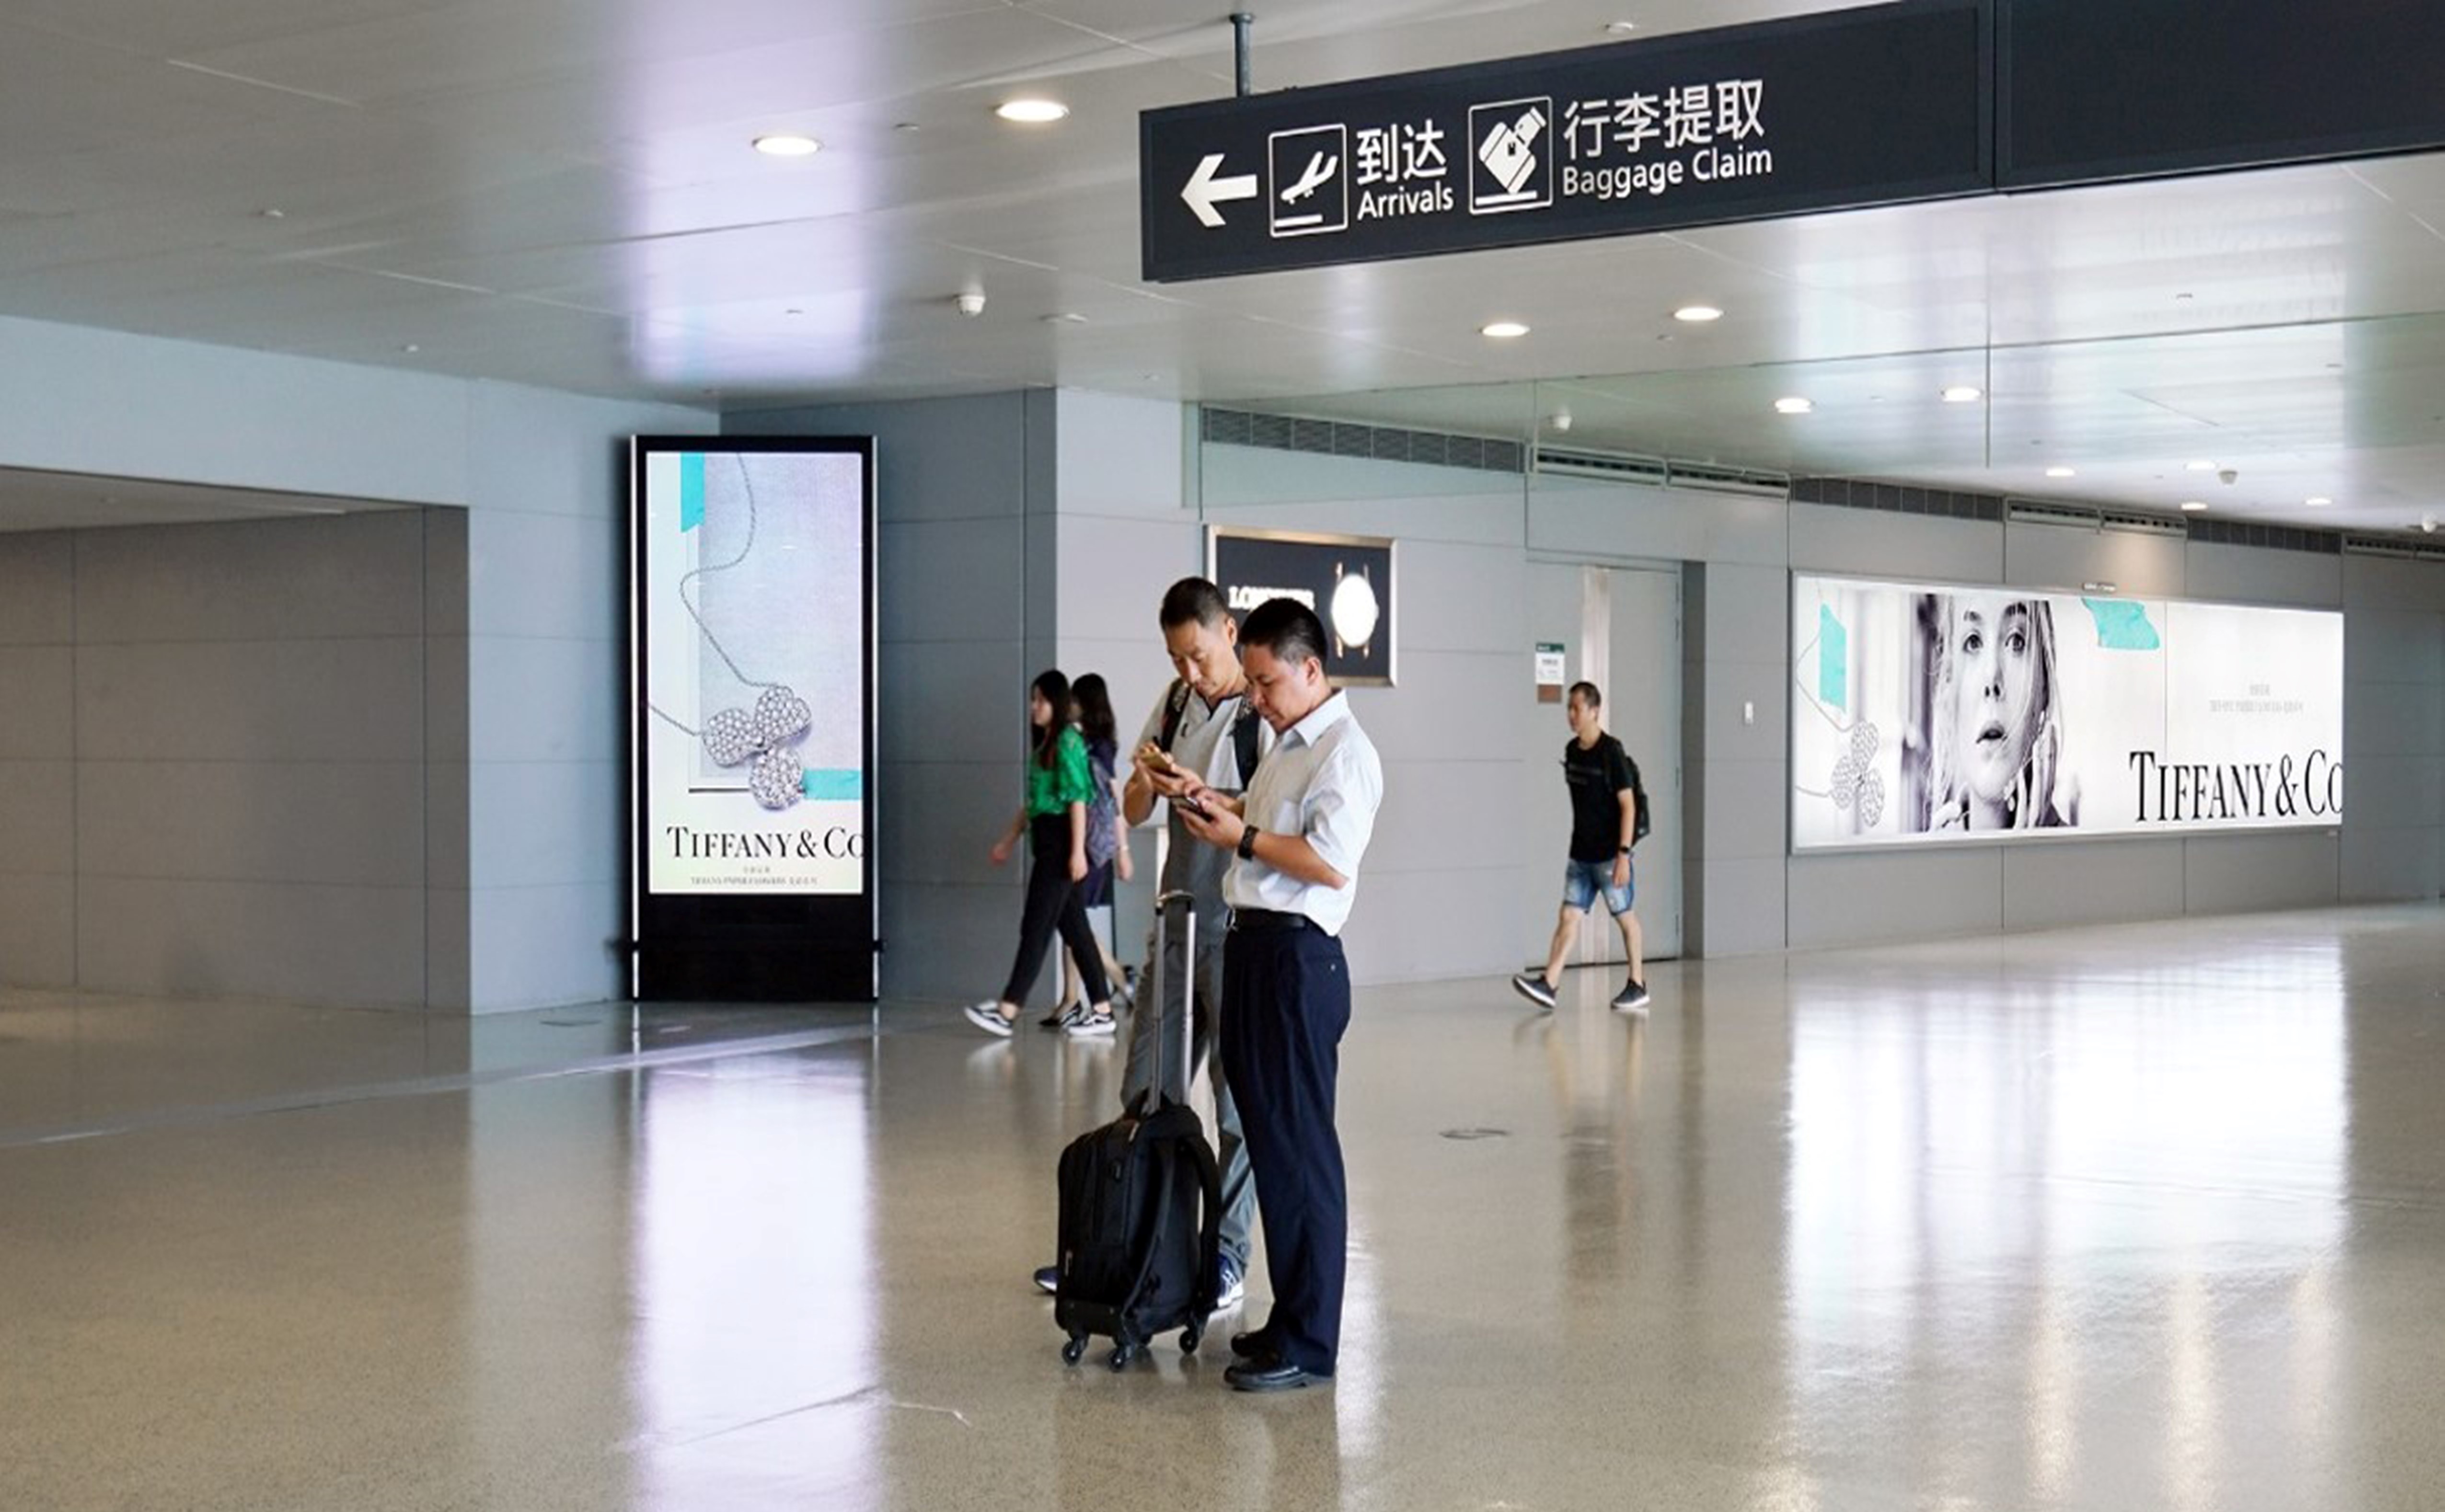 上海机场广告-虹桥T2到达长廊电子屏墙面灯箱